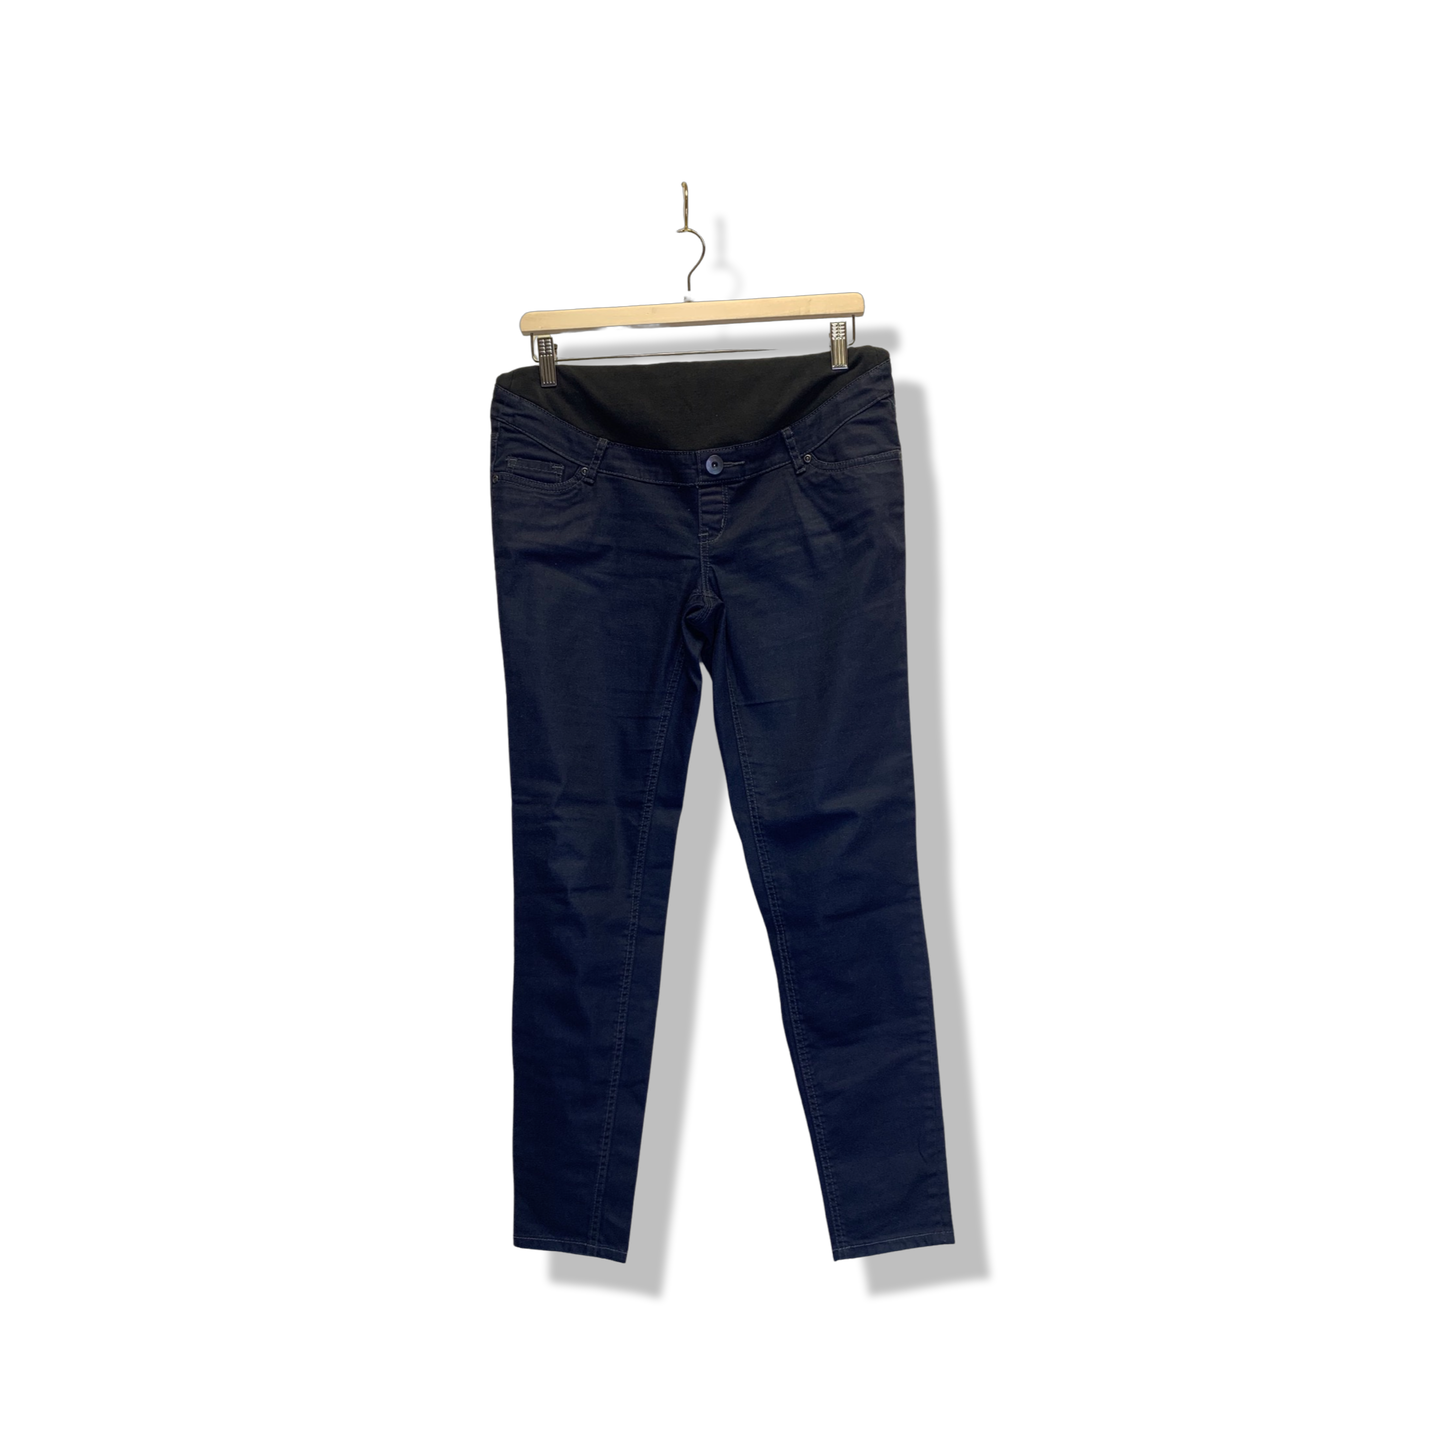 Medium - Jeans